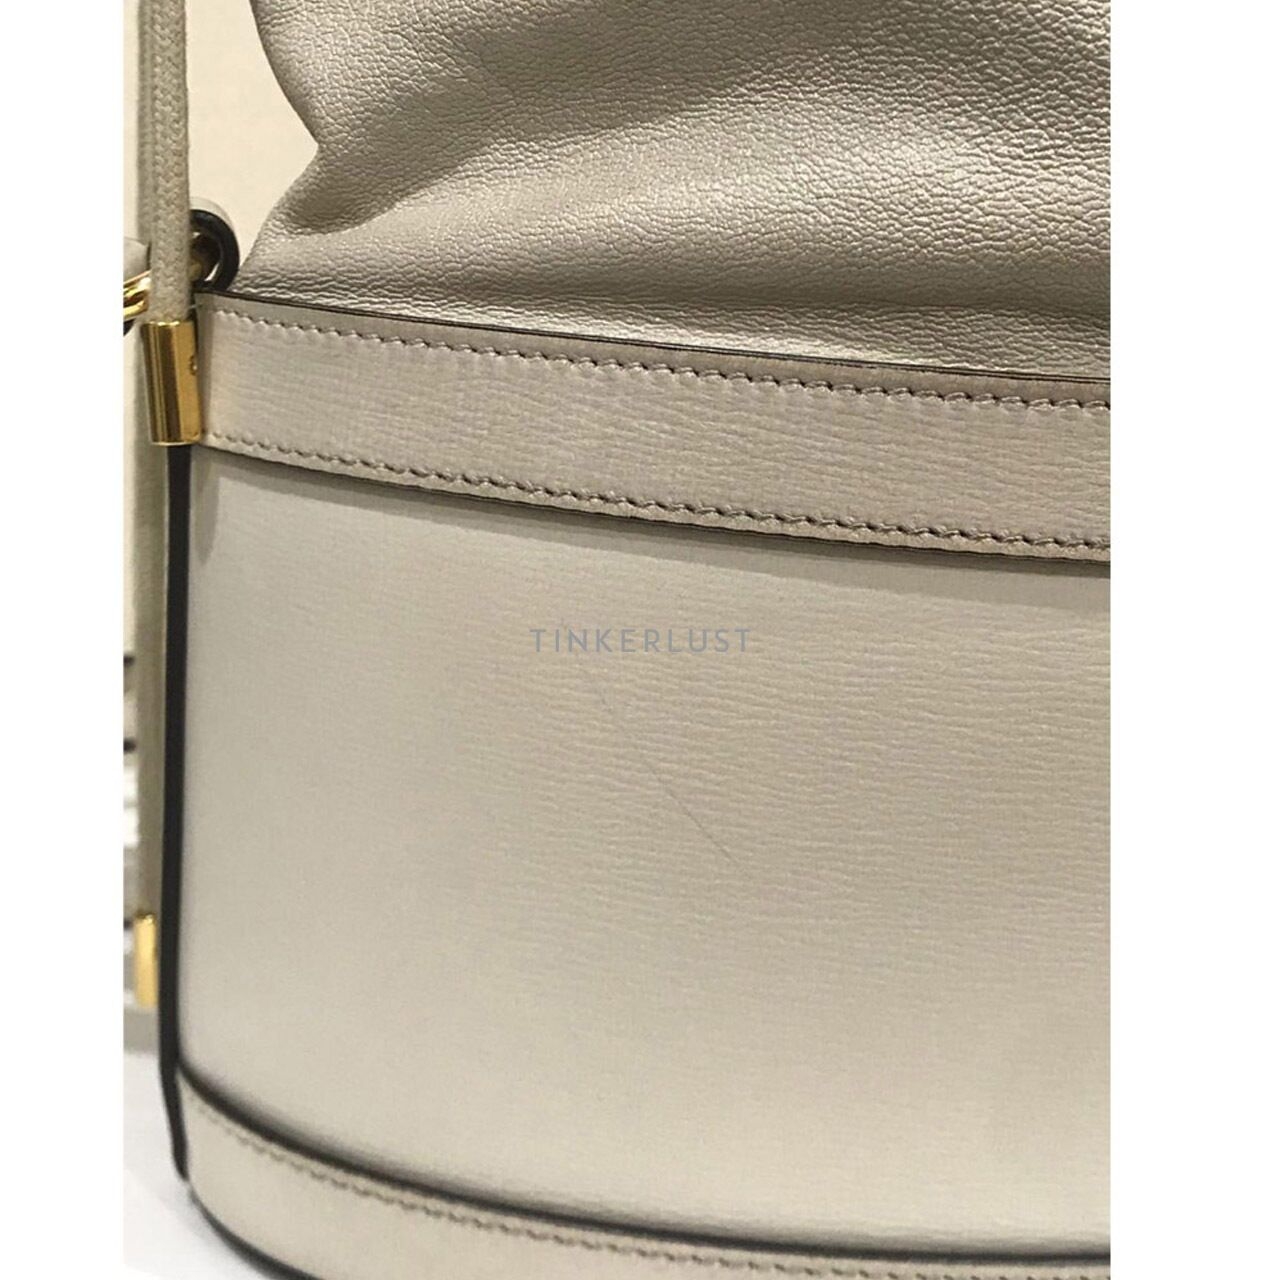 Gucci Horsebit 1955 White Bucket GHW Sling Bag